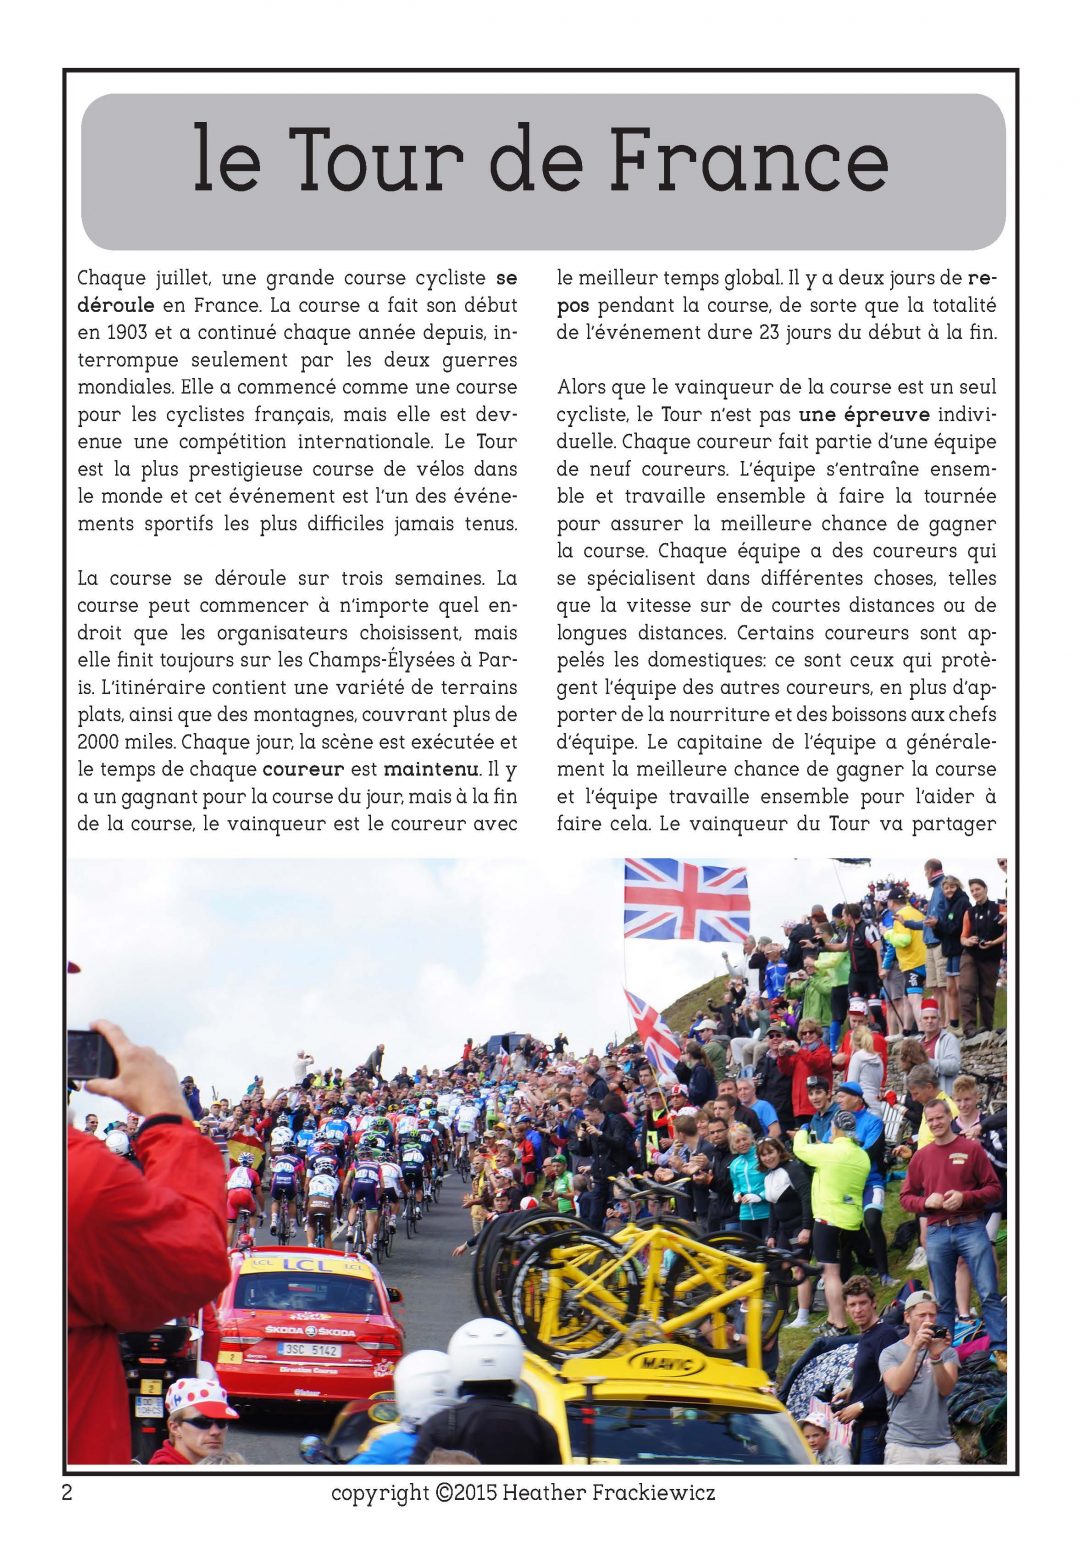 Le Tour de France French reading comprehension activity